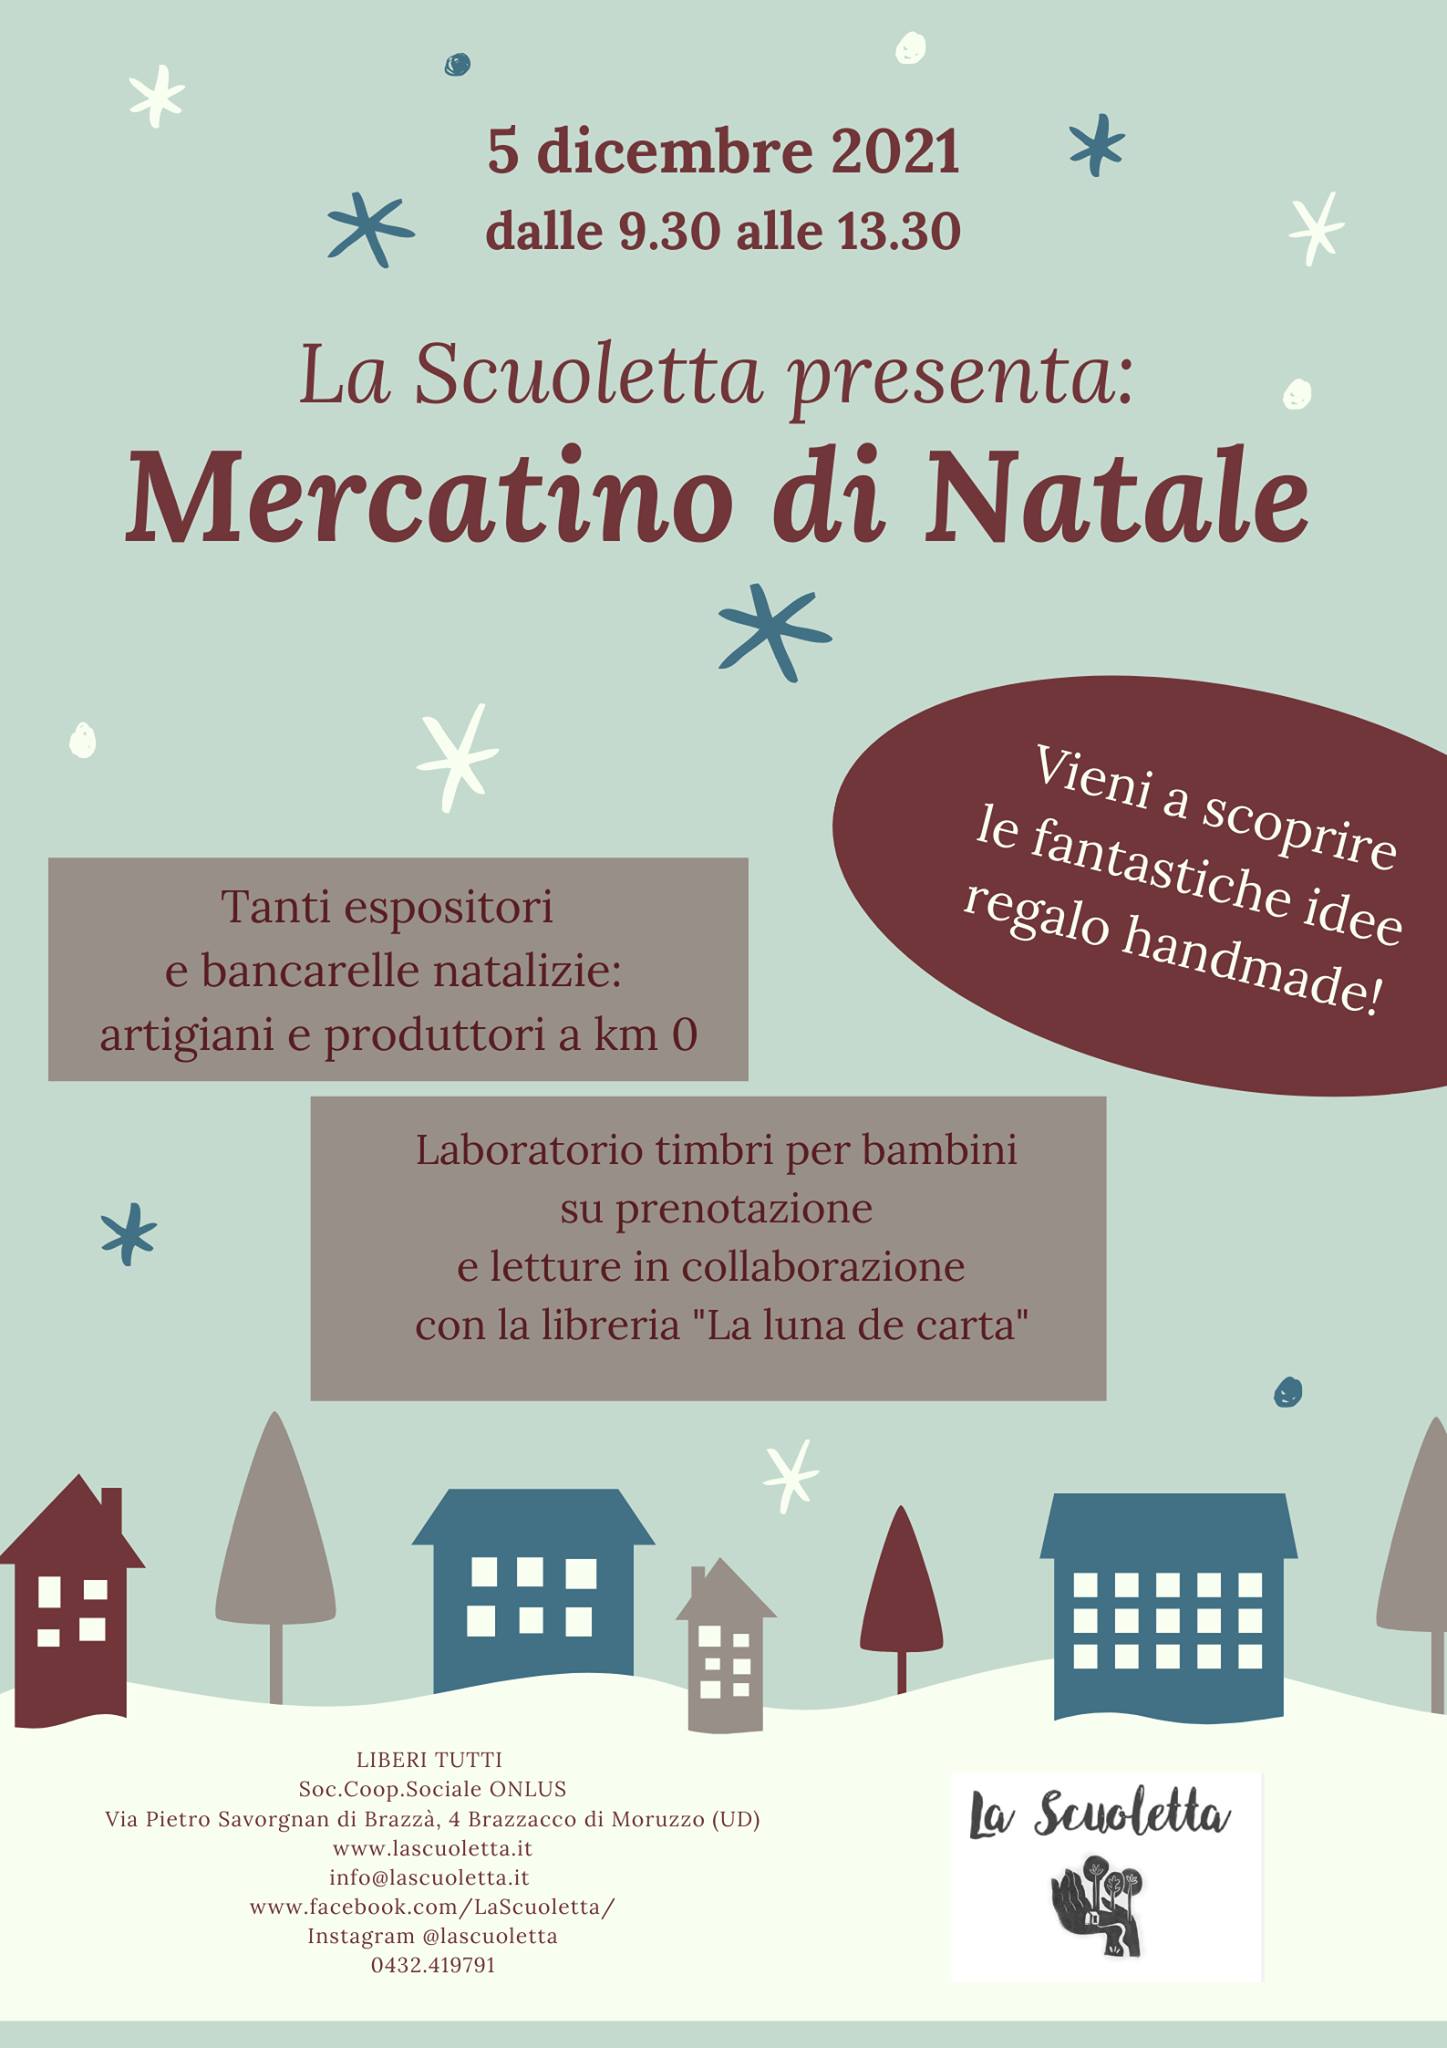 MERCATINO DI NATALE - EventiFVG.it